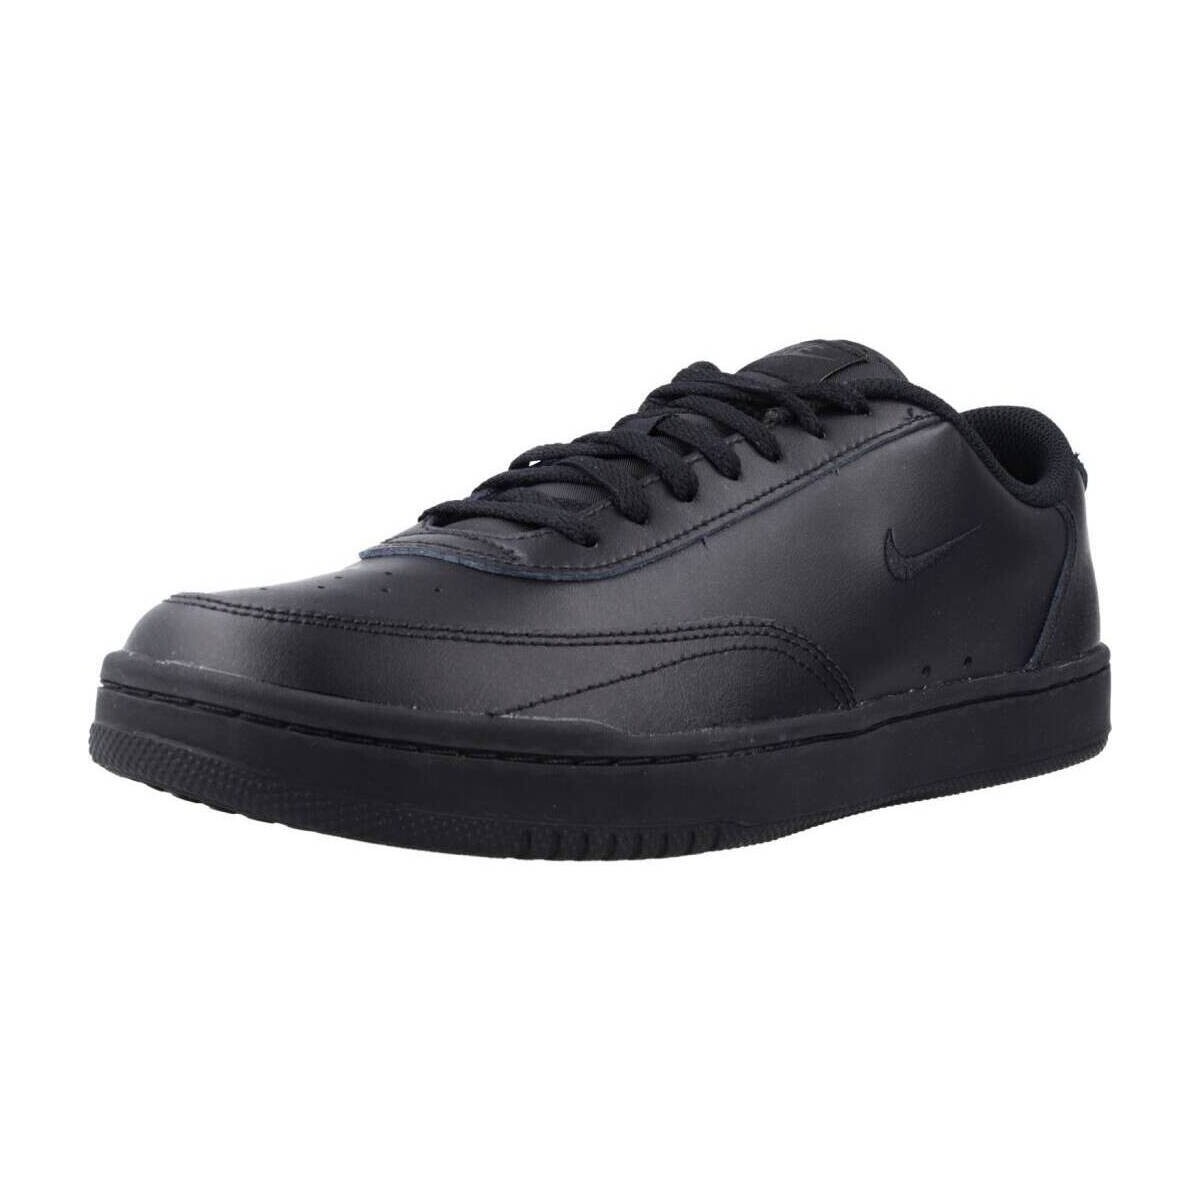 Cipők Férfi Divat edzőcipők Nike COURT VINTAGE Fekete 